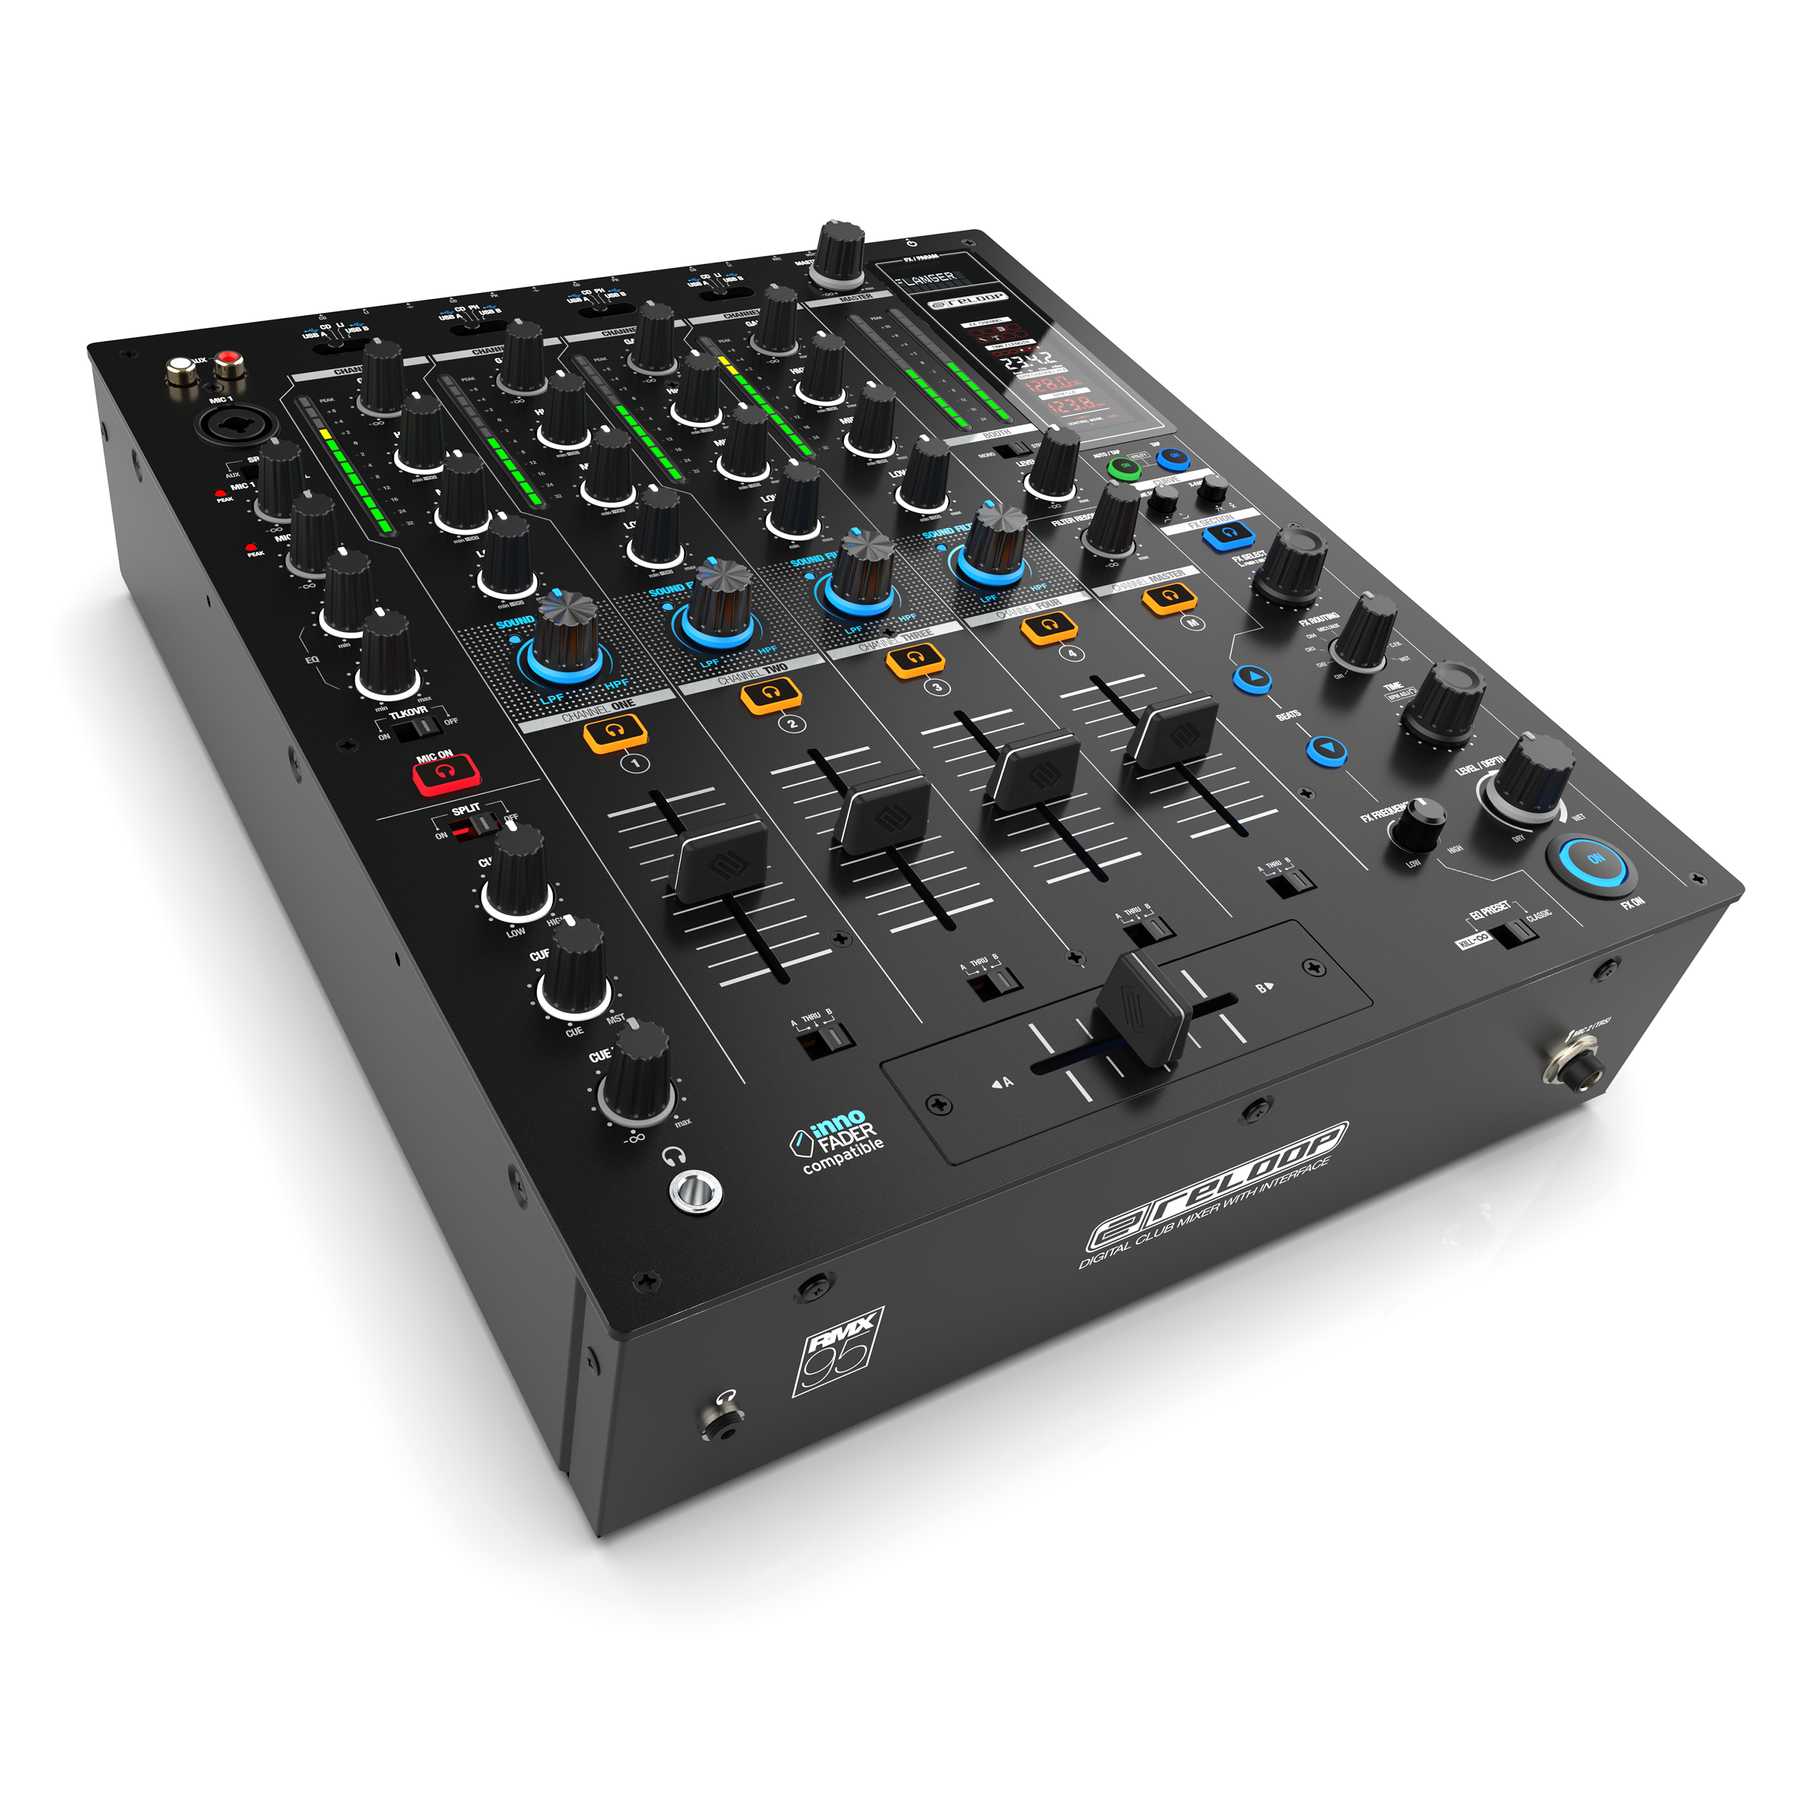 Nuevo mezclador para DJ Reloop RMX-95